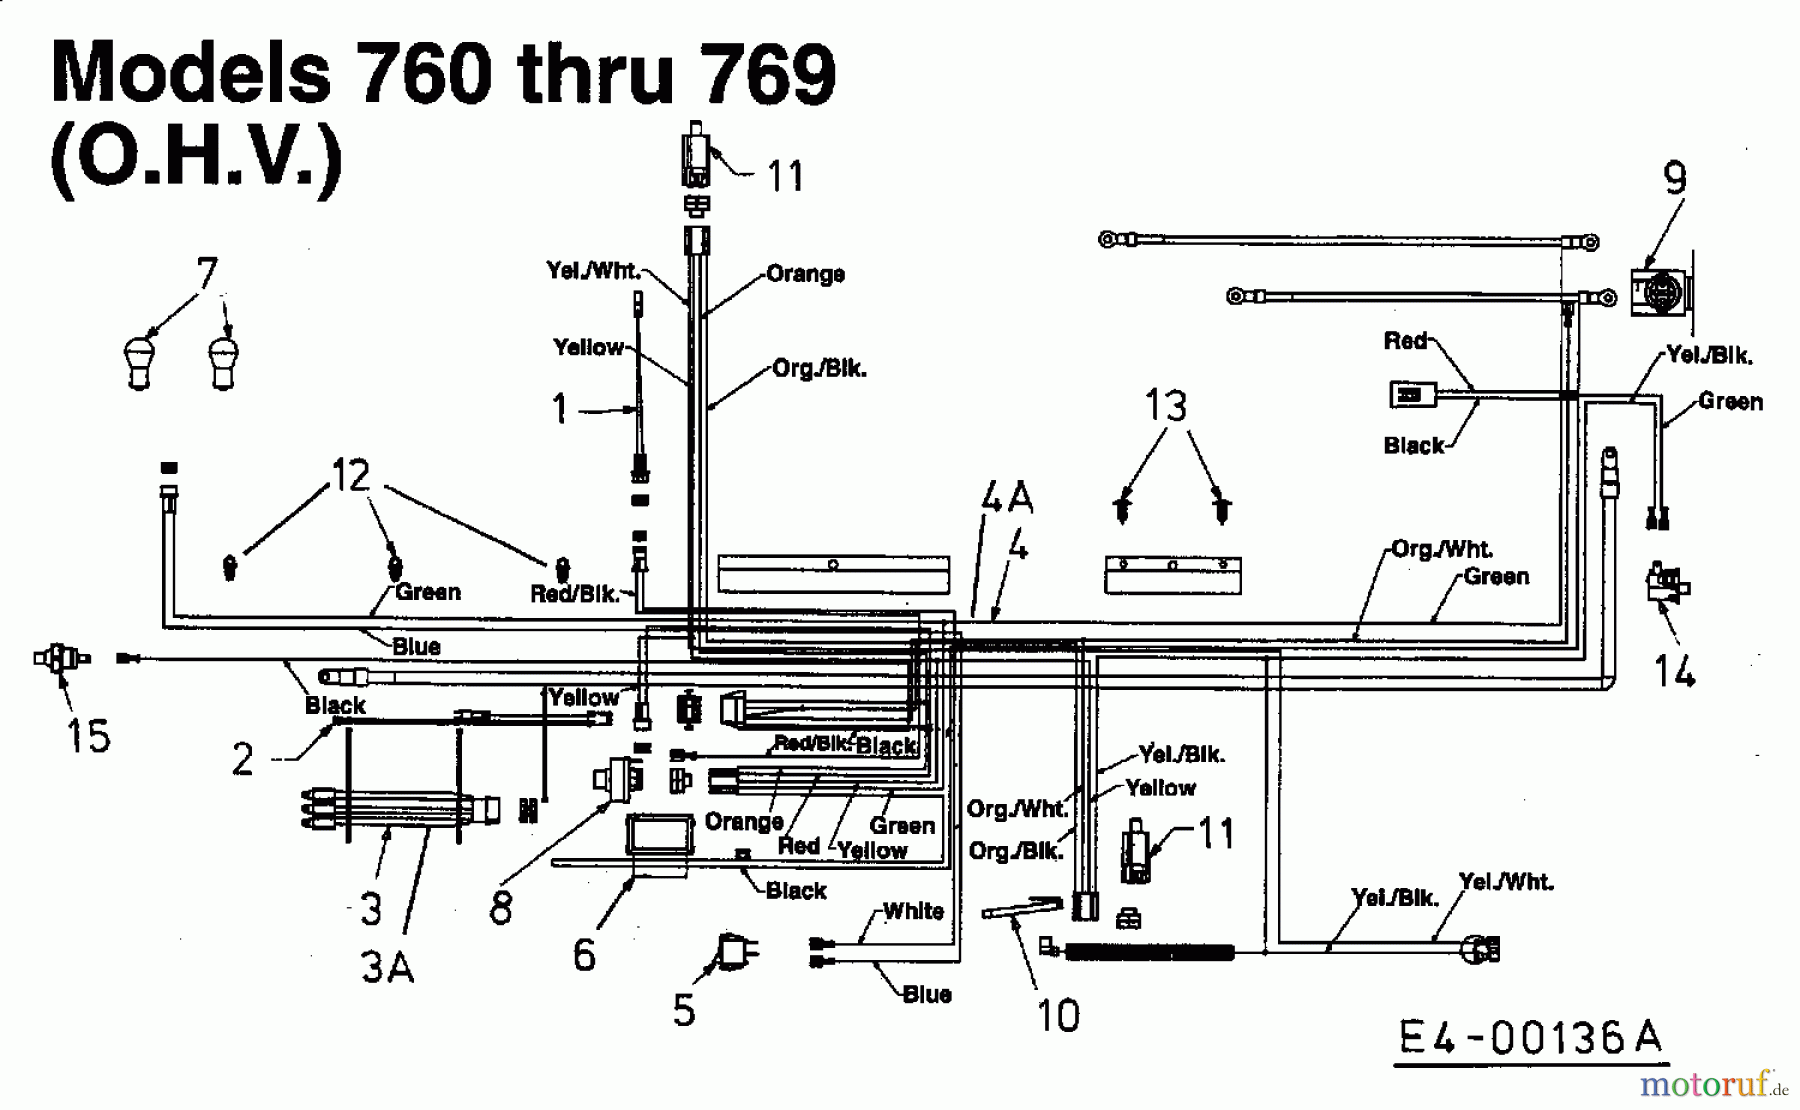  Yard-Man Lawn tractors TN 7130 13BA764N643  (1998) Wiring diagram for O.H.V.